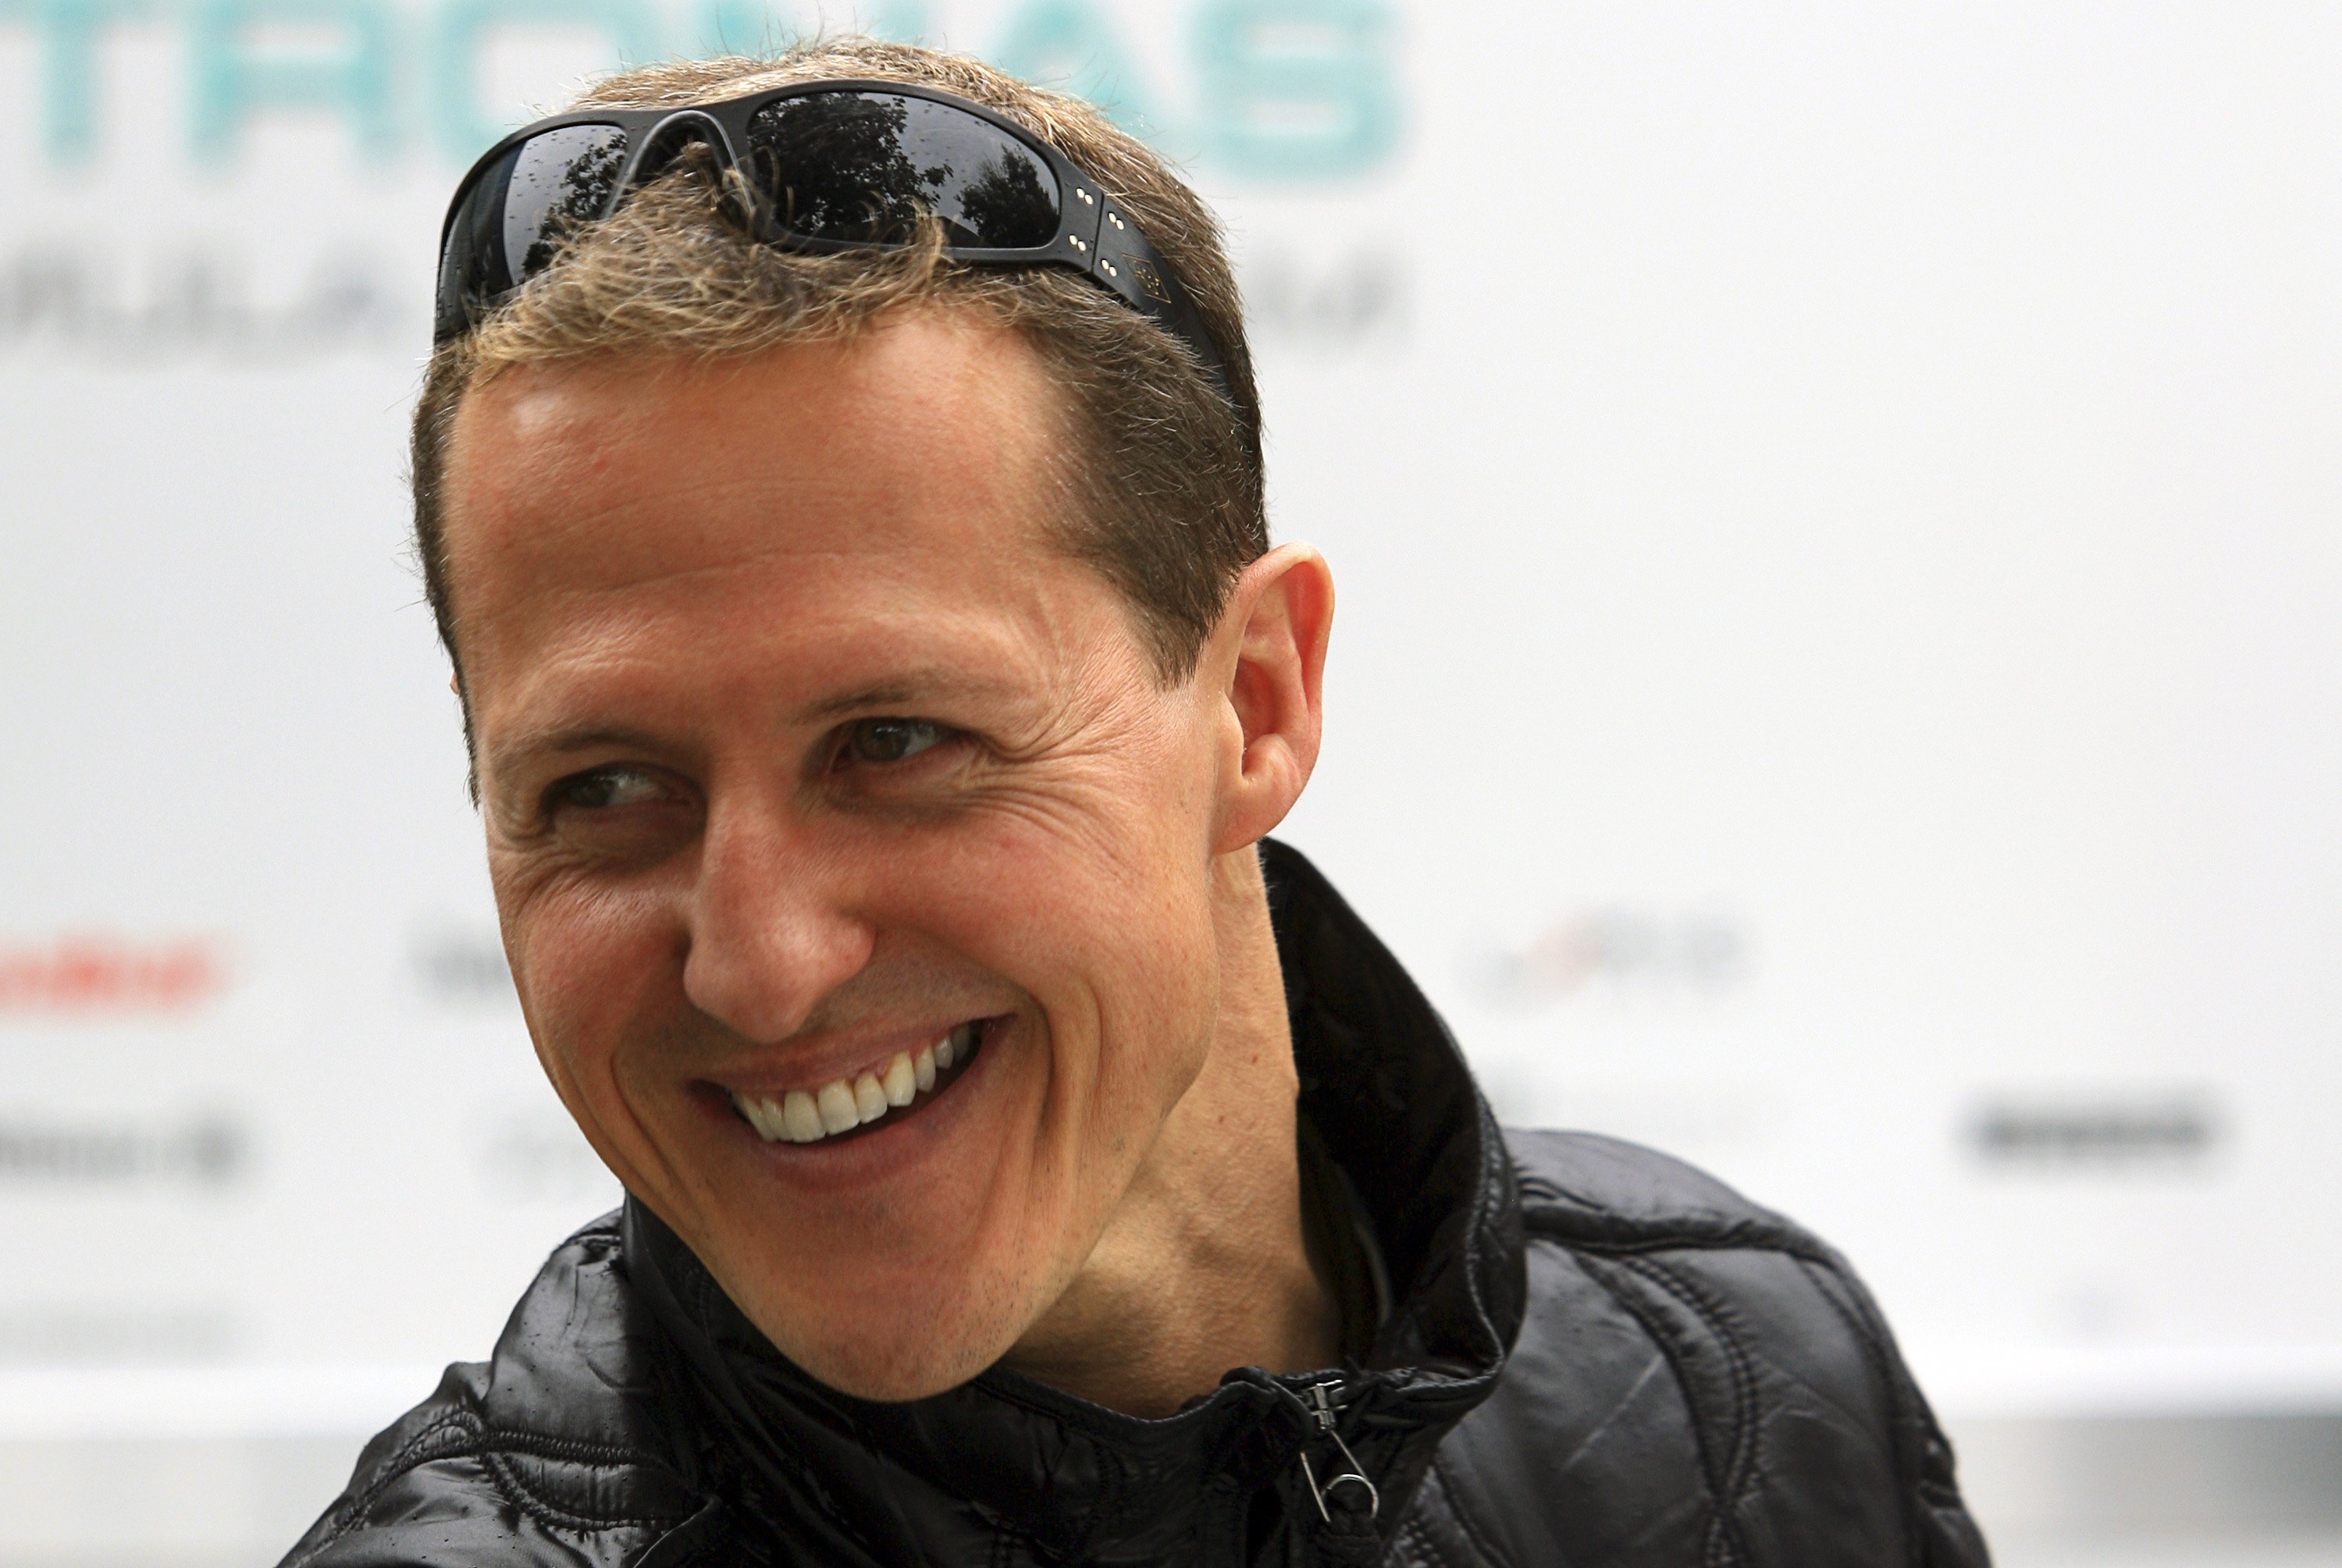 Sospechoso de robo del expediente médico de Schumacher se suicida en prisión